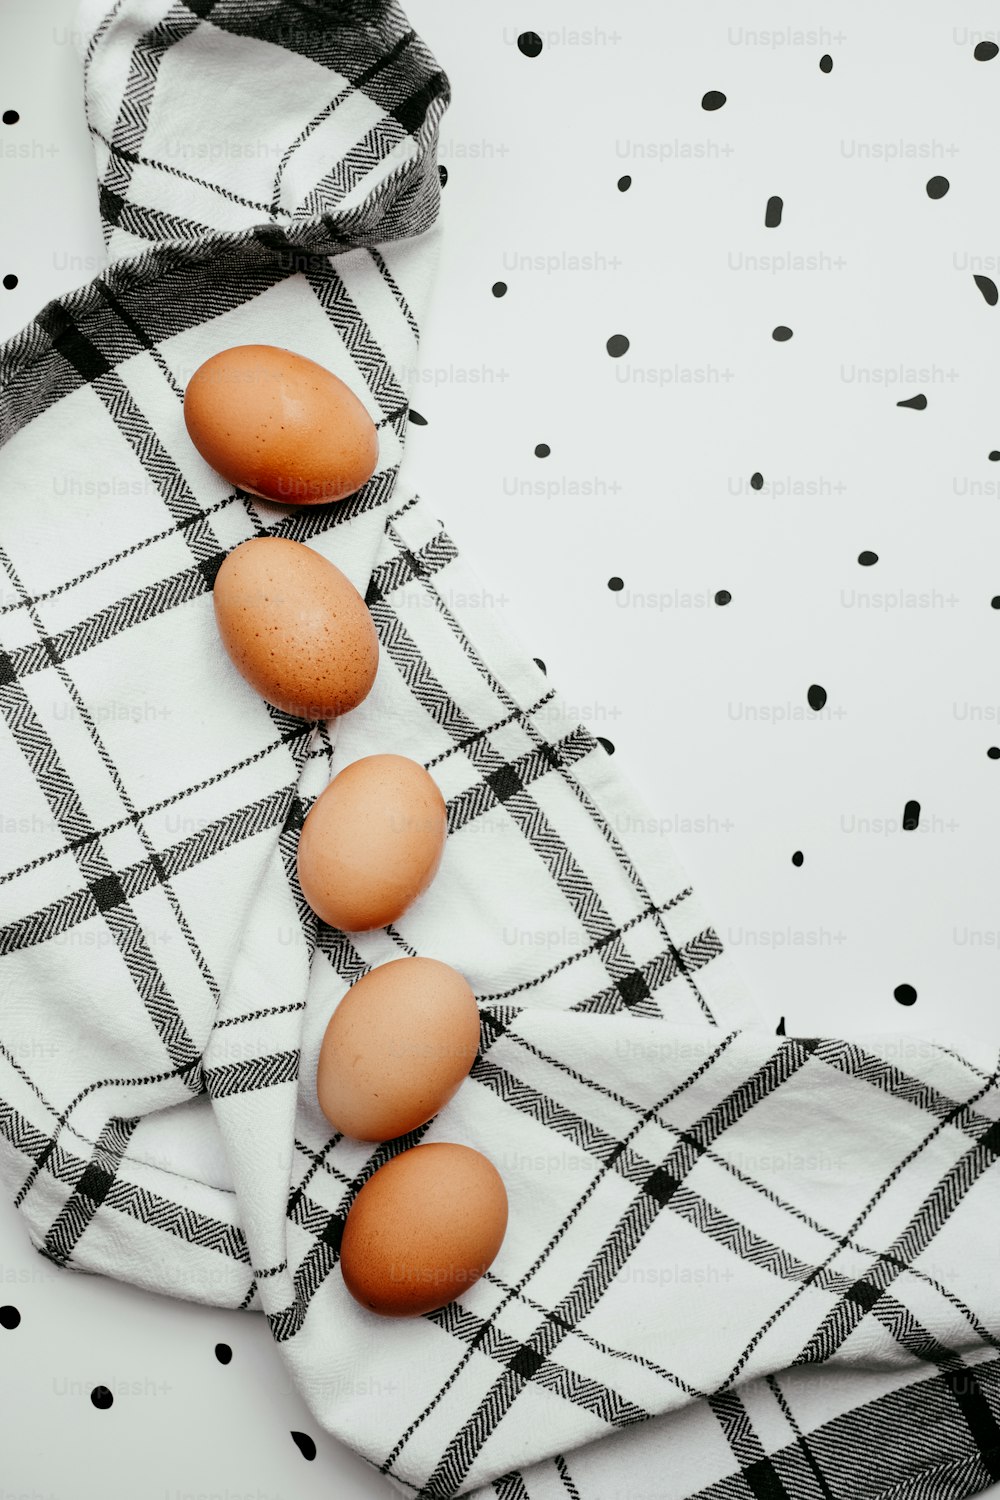 Trois œufs sont assis sur une serviette sur une table